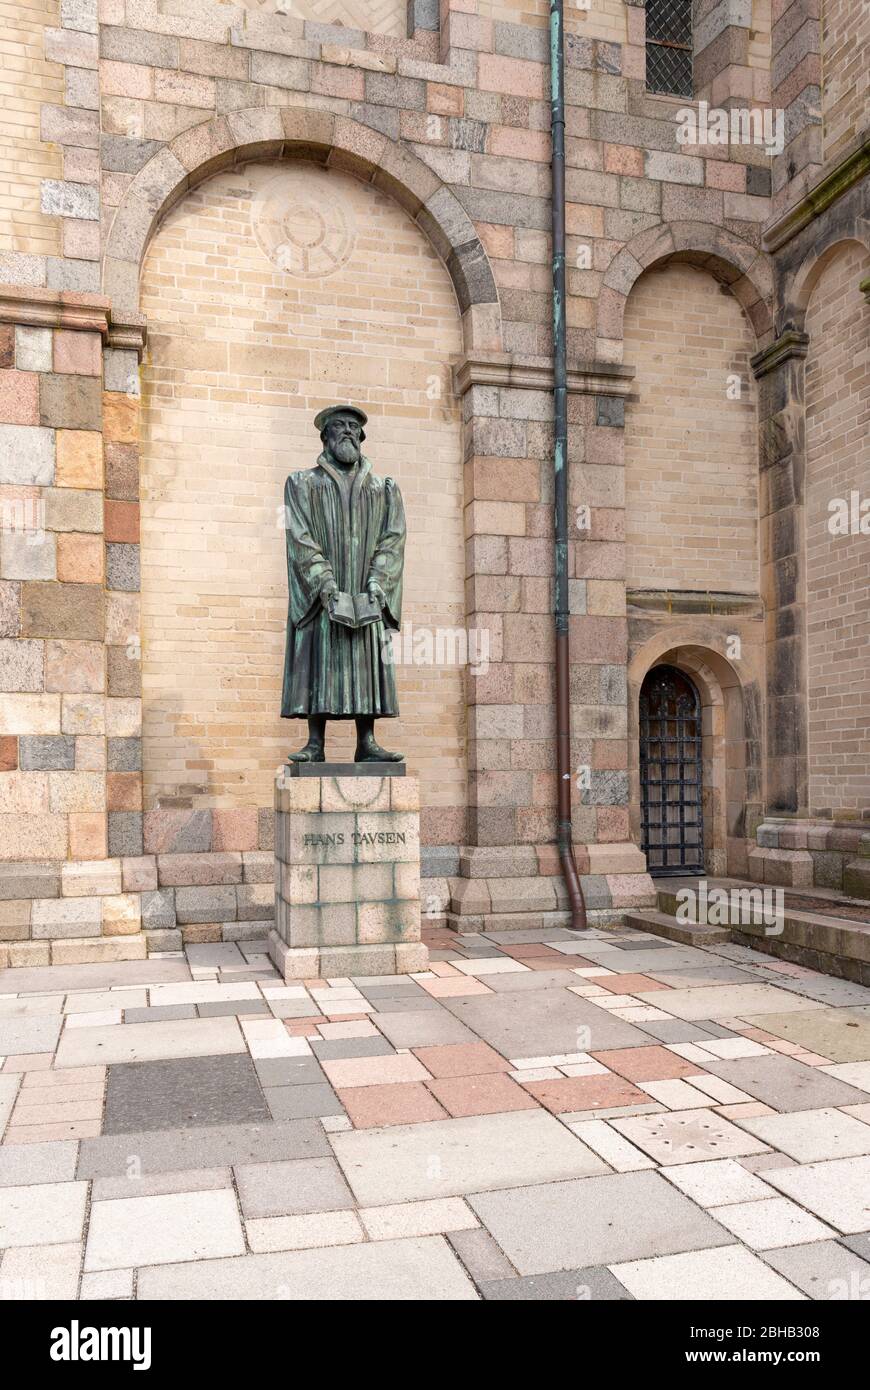 Danimarca, Jutland, Ribe (la più antica città della Danimarca), statua presso la cattedrale, Hans Tavsen (1494-1561) teologo danese e riformatore evangelico. Foto Stock